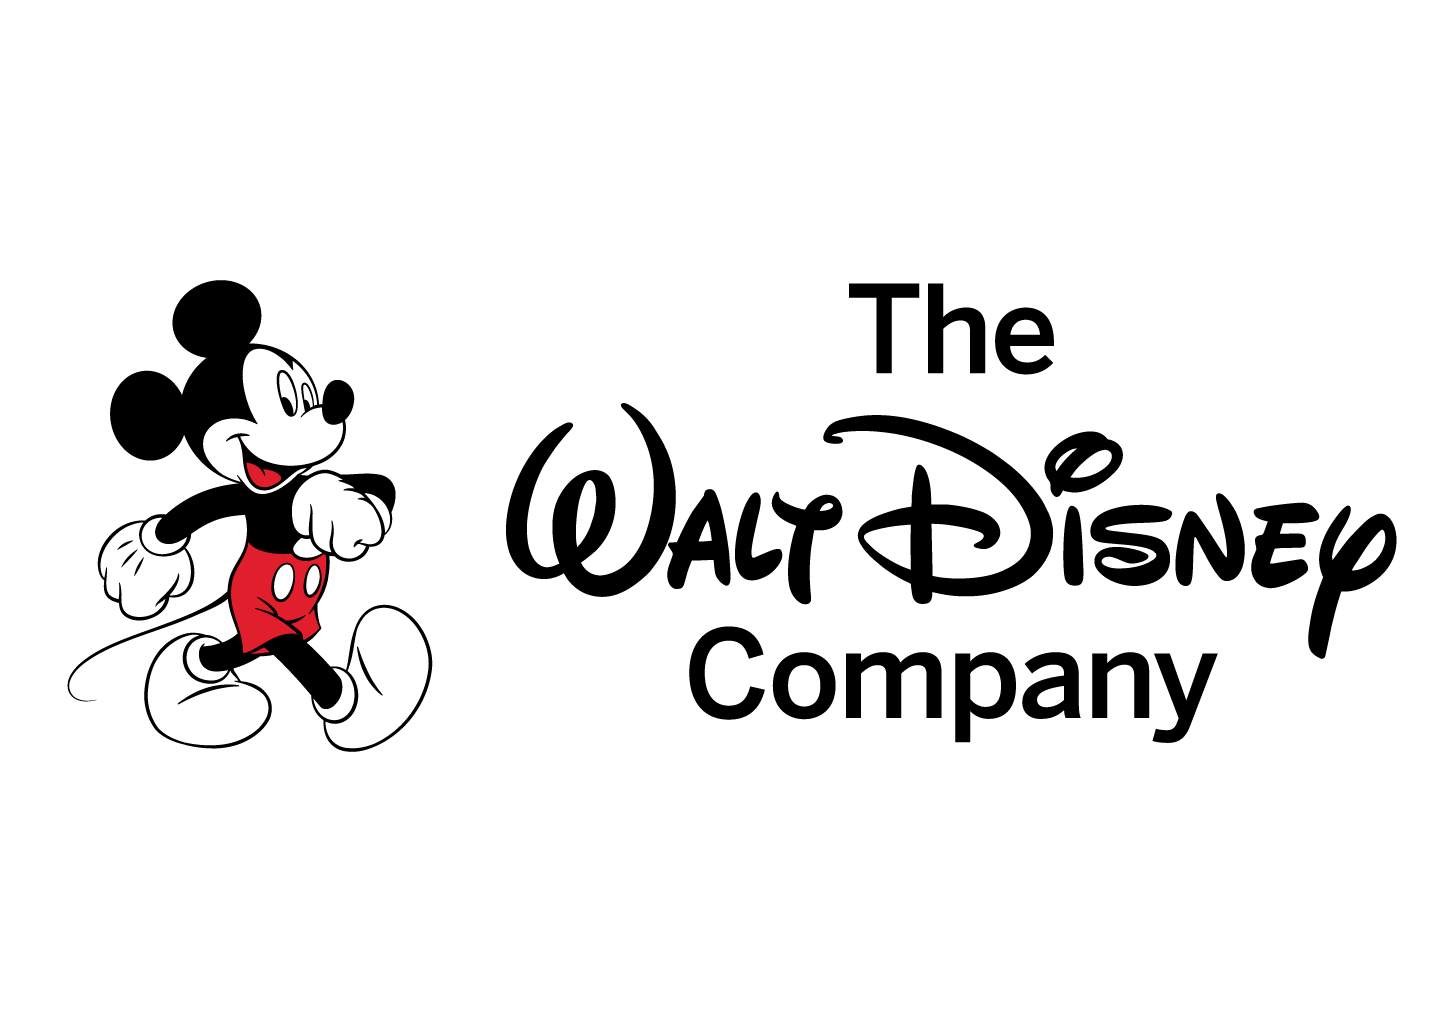 Студия уолта диснея. The Walt Disney Company компания. Дисней эмблема. Логотип студии Уолта Диснея. Волт Дисней логотип.